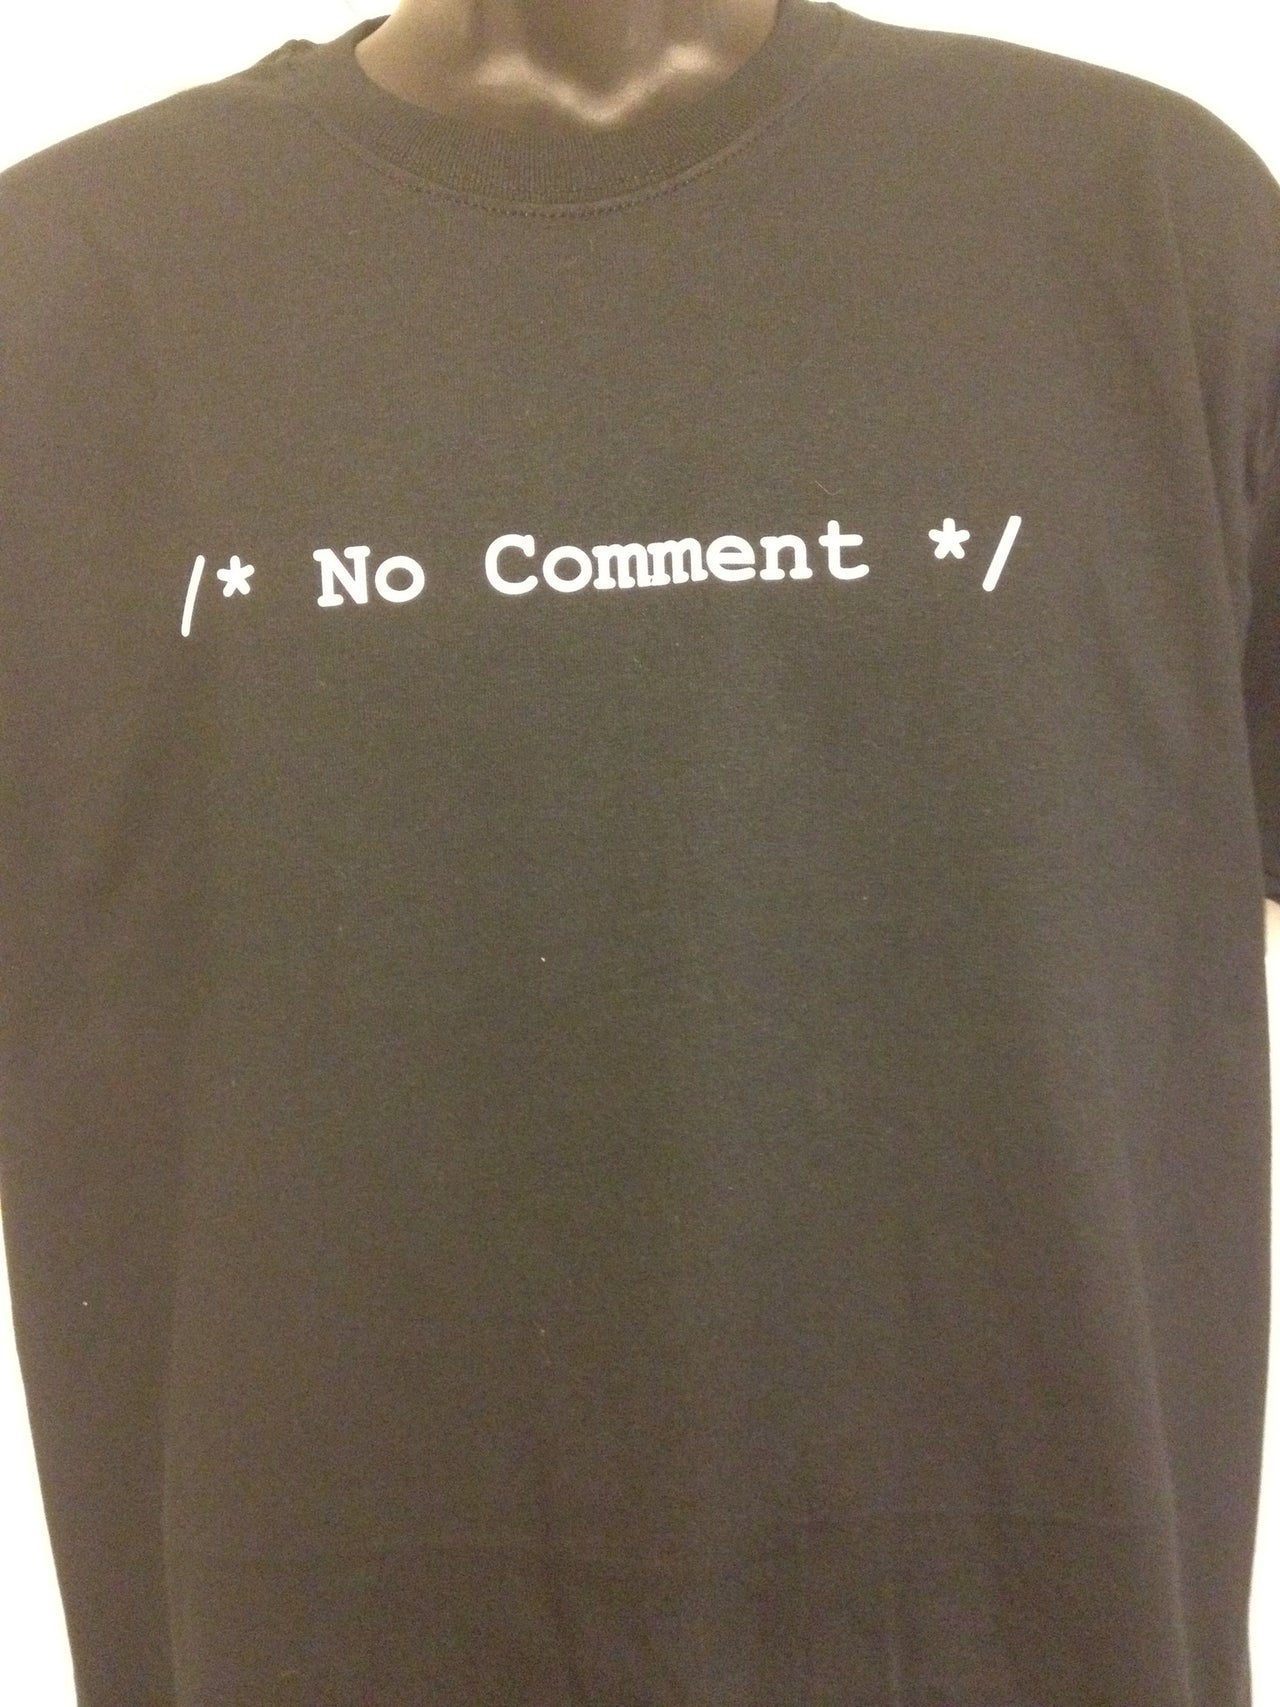 /* No Comment */ Tshirt: Black With White Print - TshirtNow.net - 6